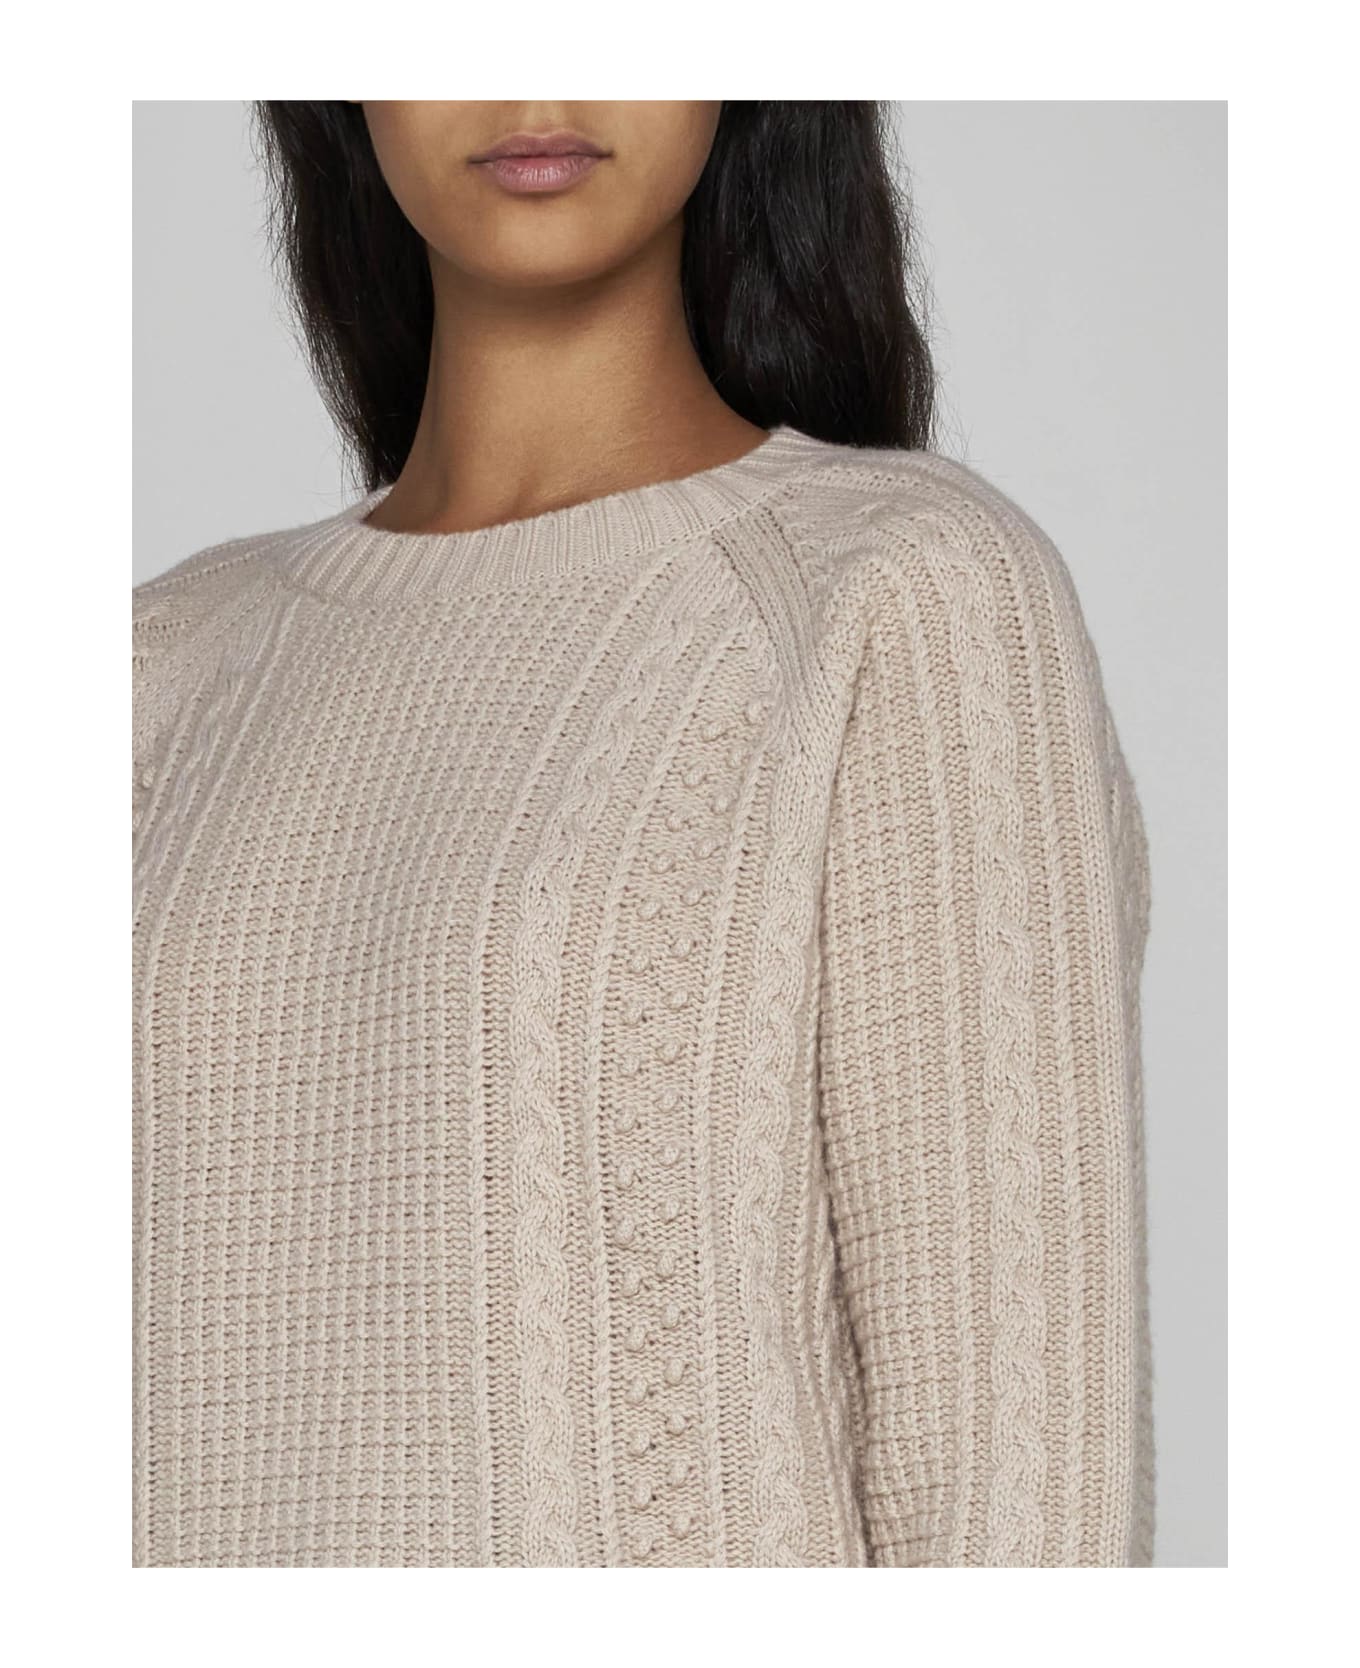 Weekend Max Mara Elid Virgin Wool Sweater - White